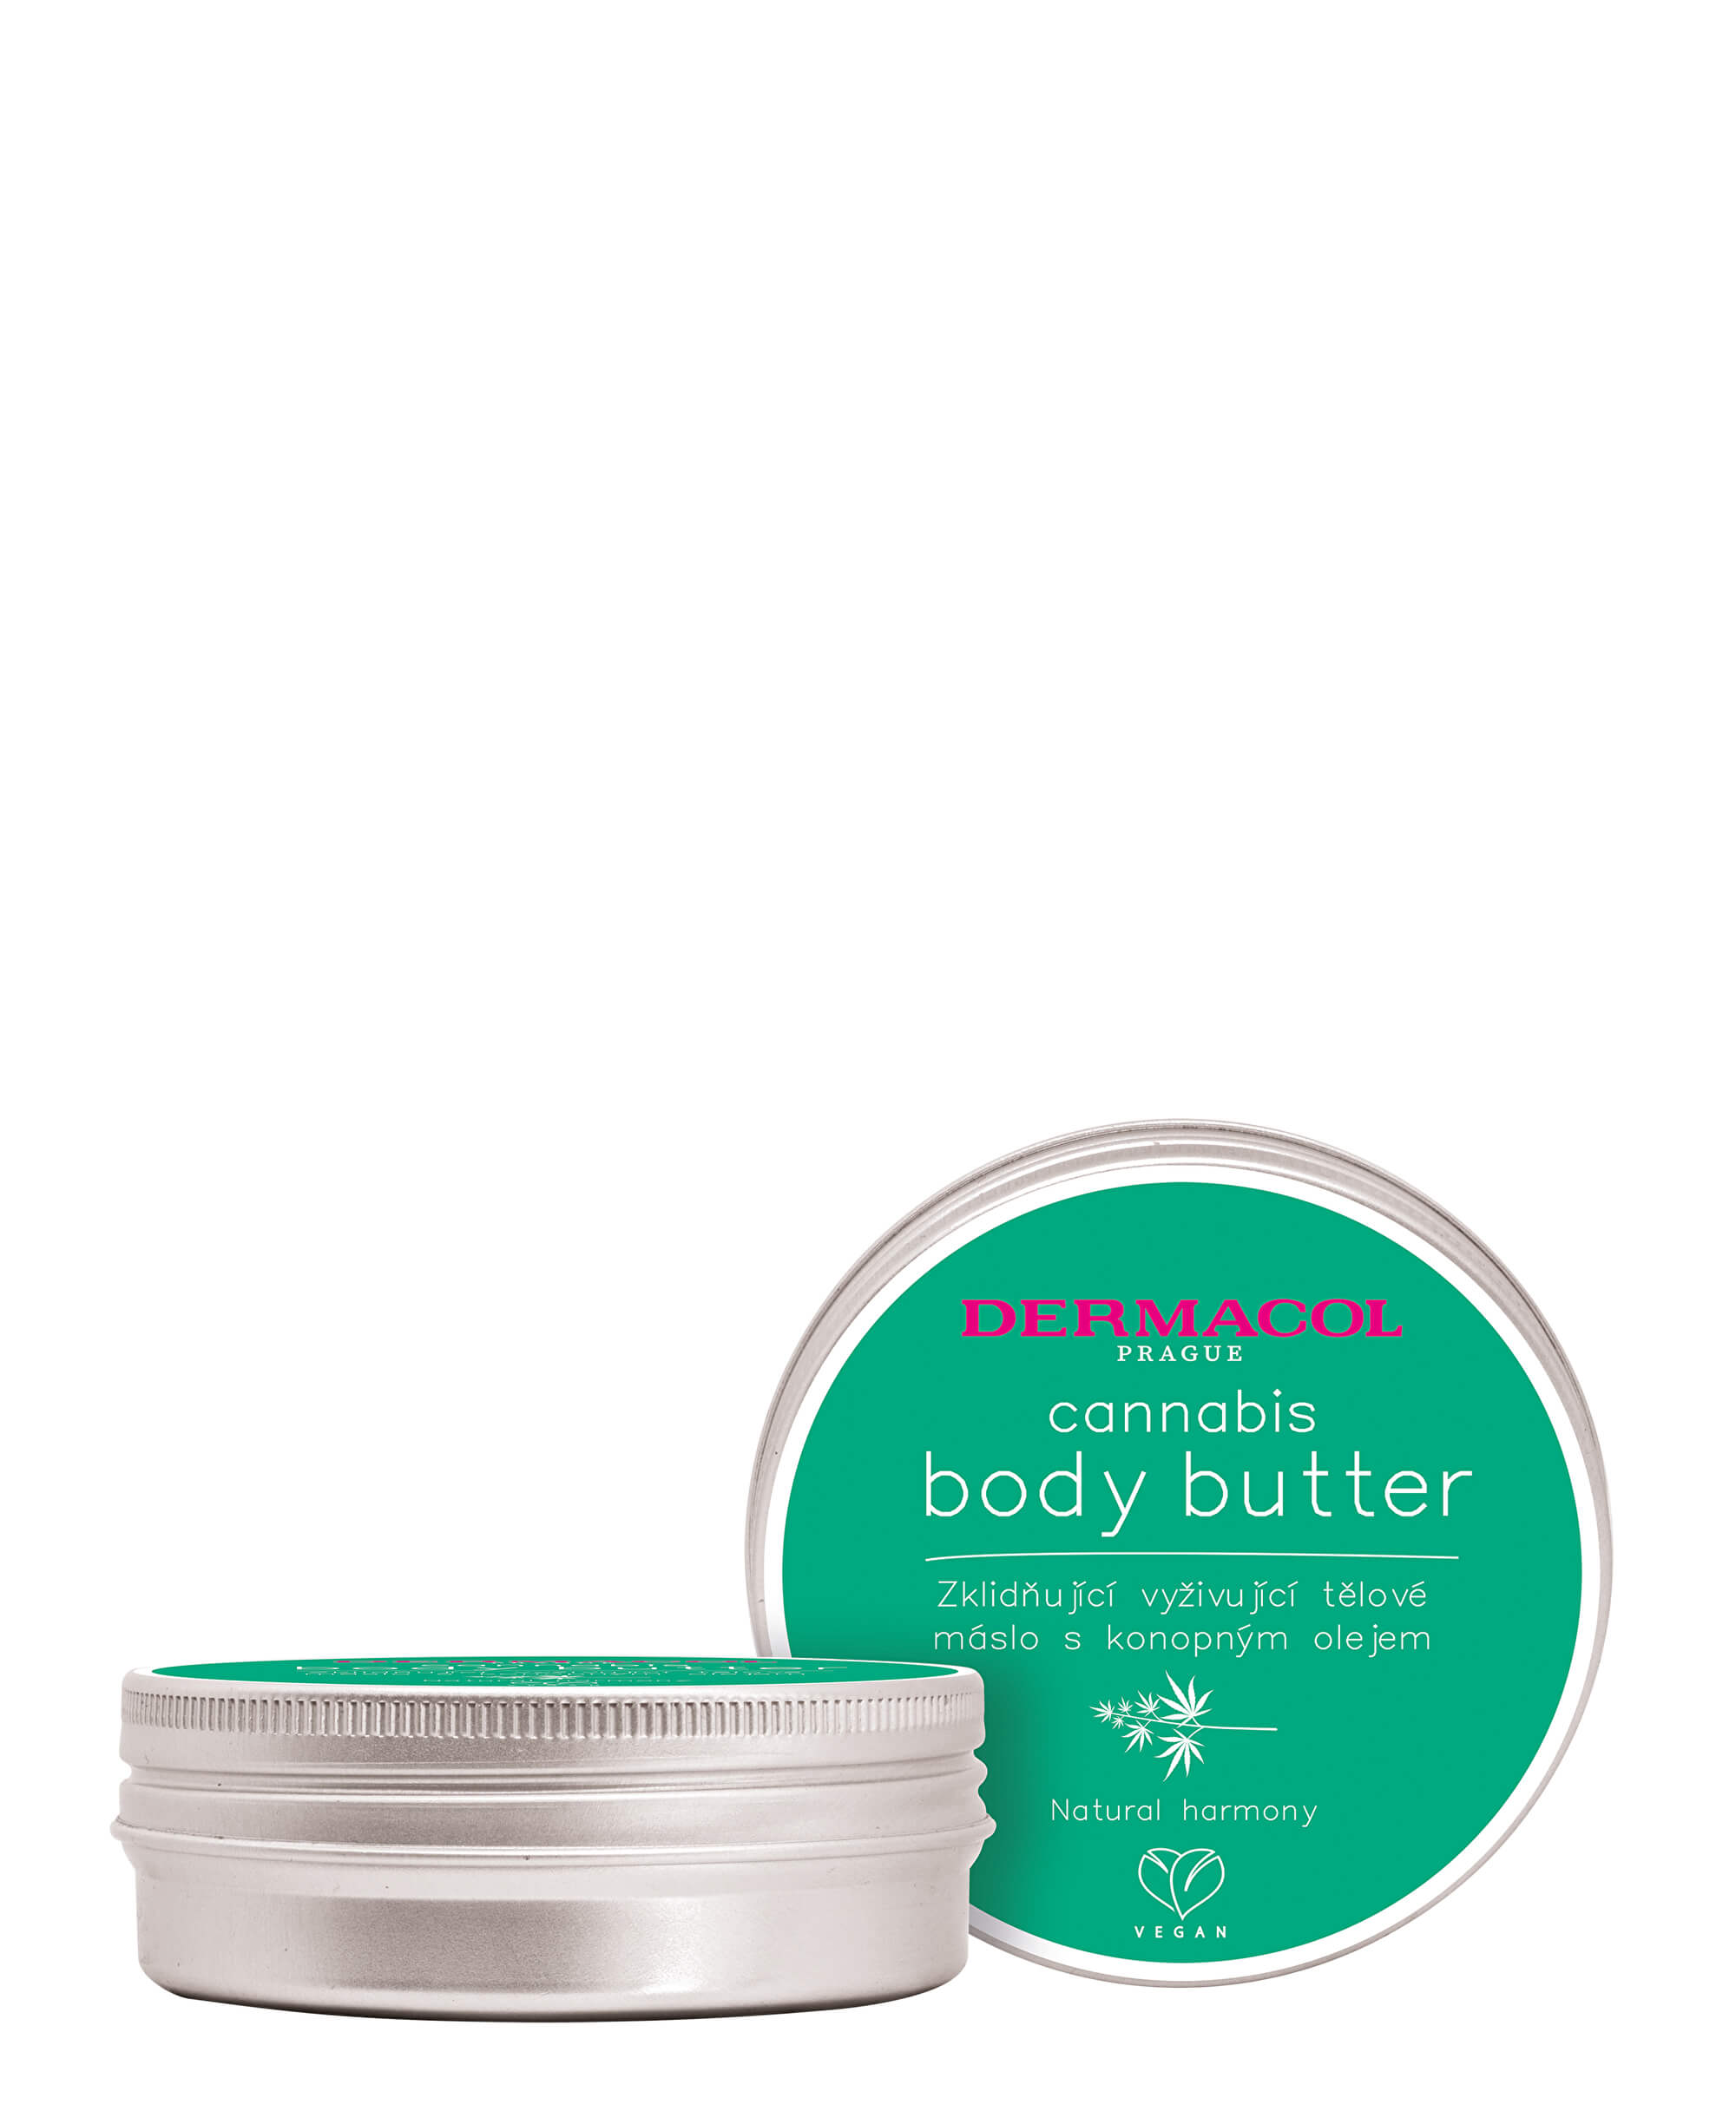 Dermacol Zklidňující vyživující tělové máslo s konopným olejem Cannabis (Body Butter) 75 ml